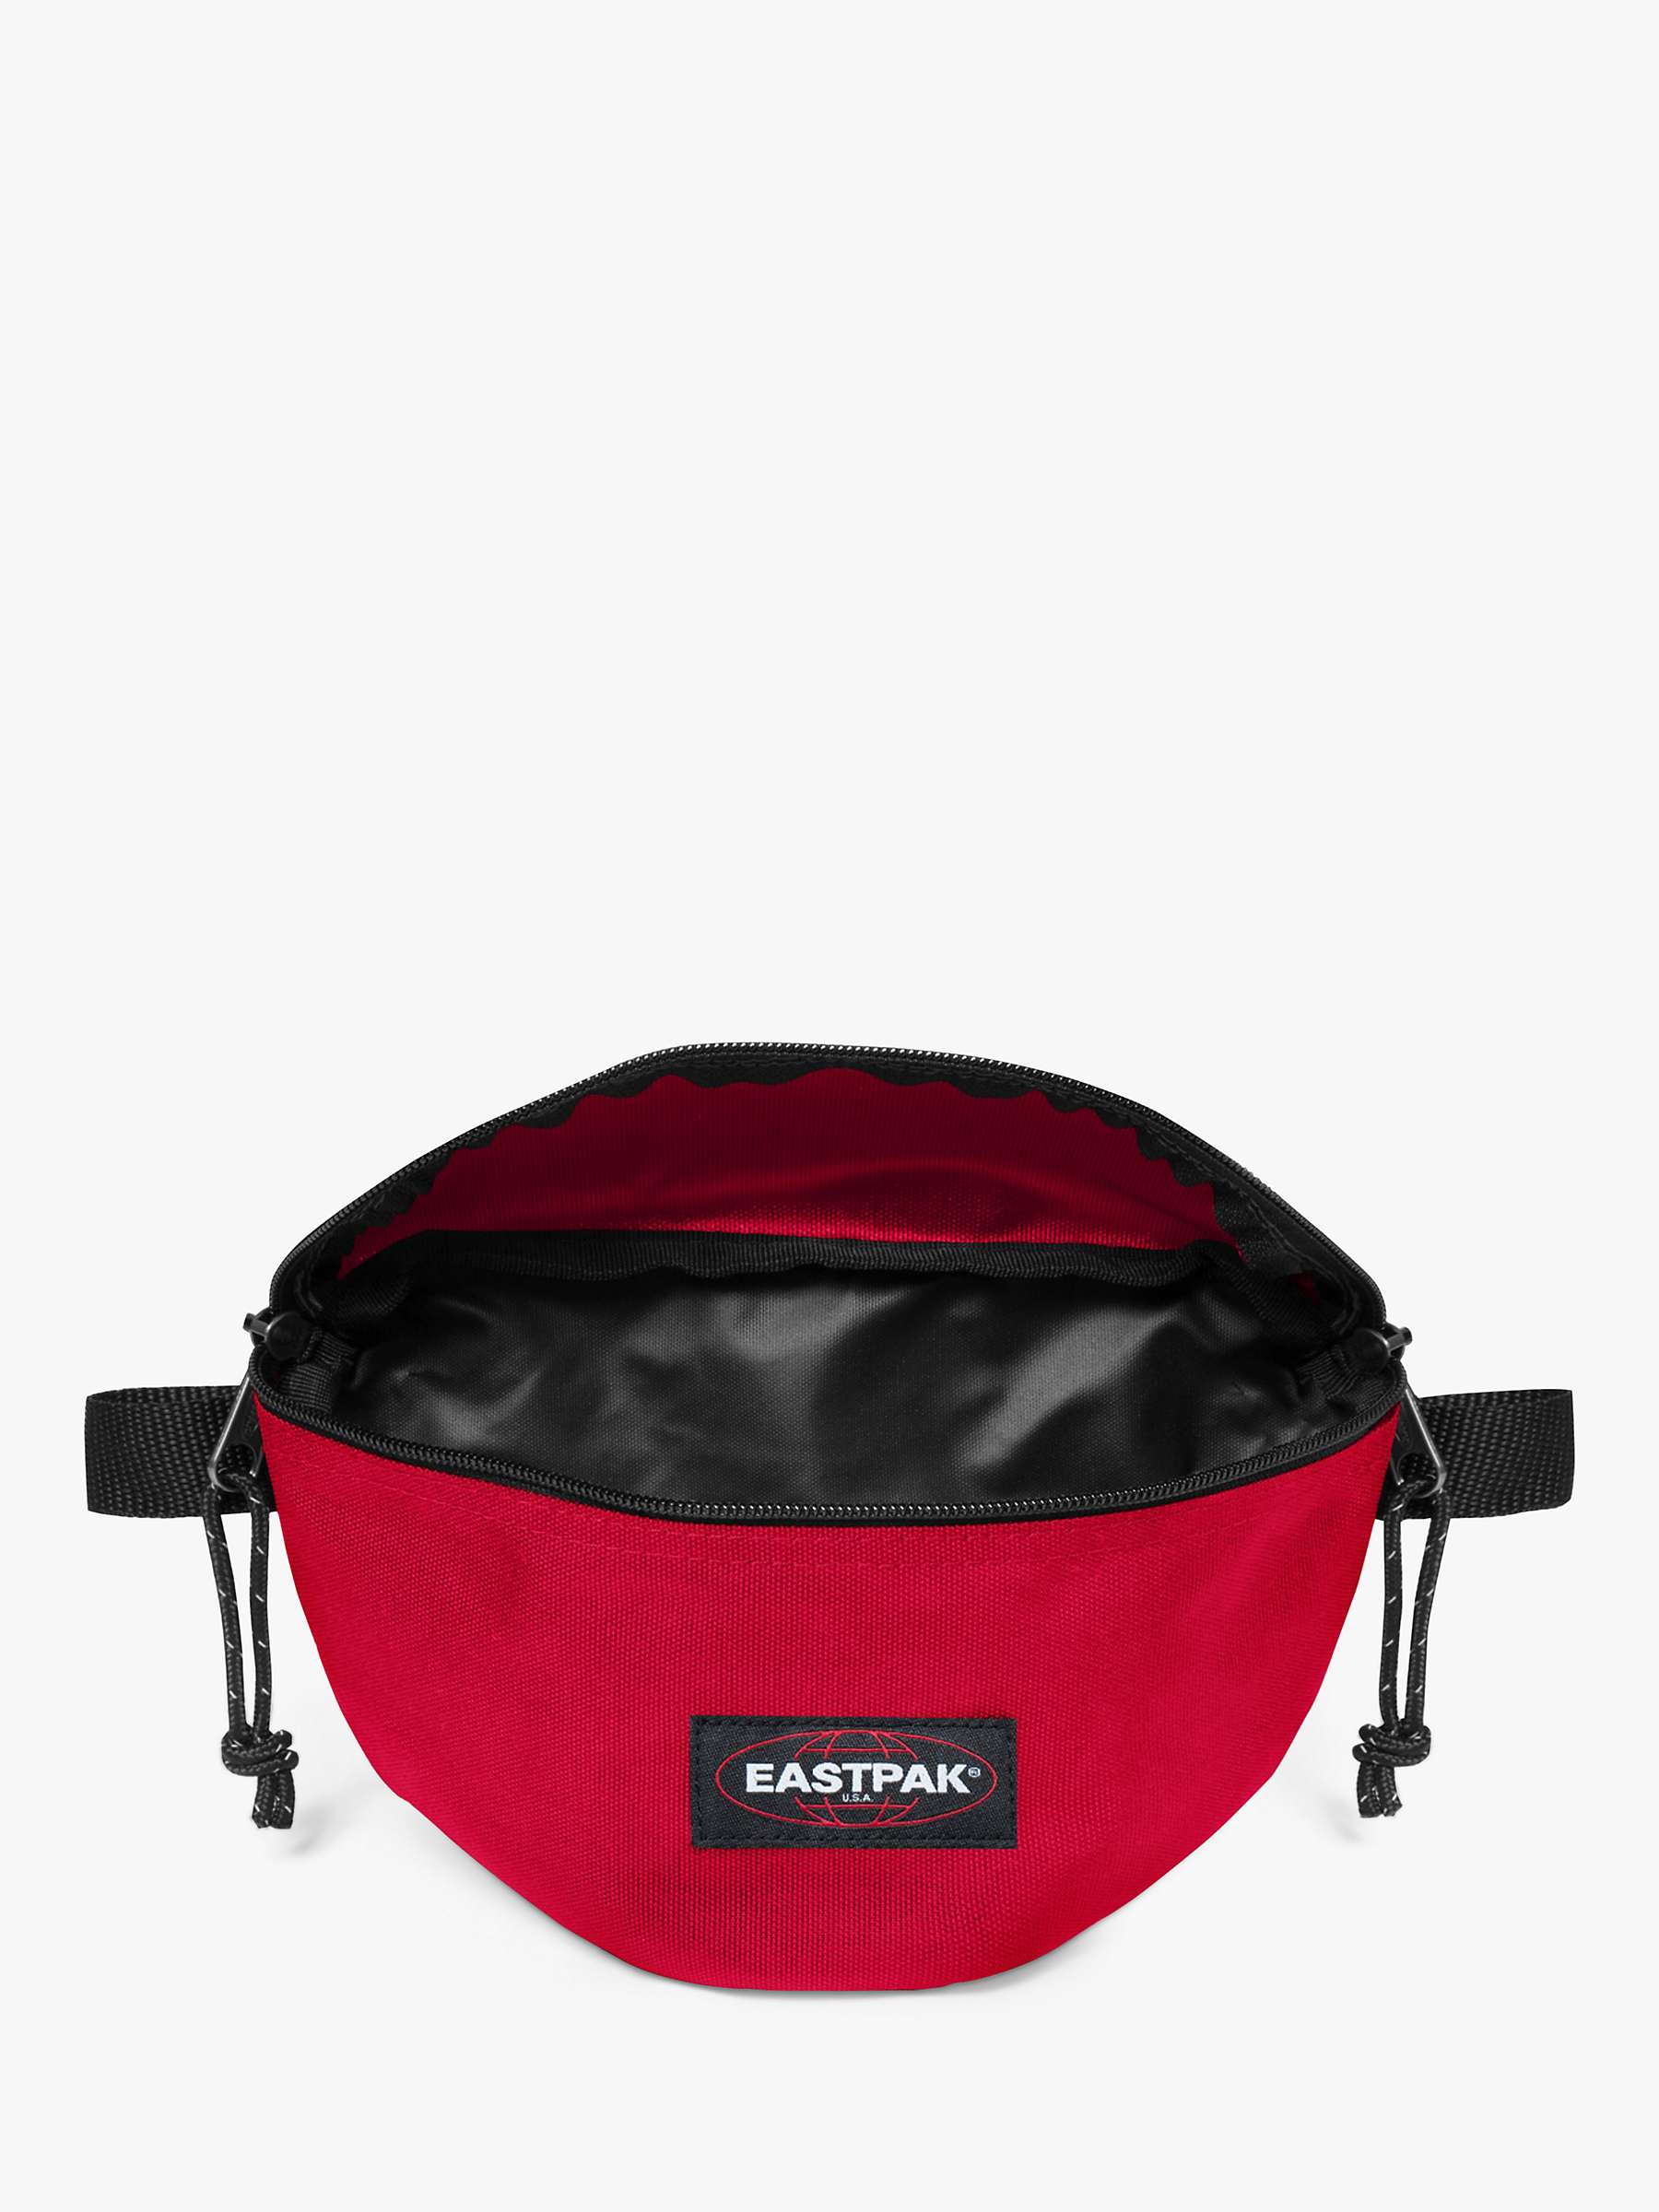 Buy Eastpak Springer Bum Bag Online at johnlewis.com